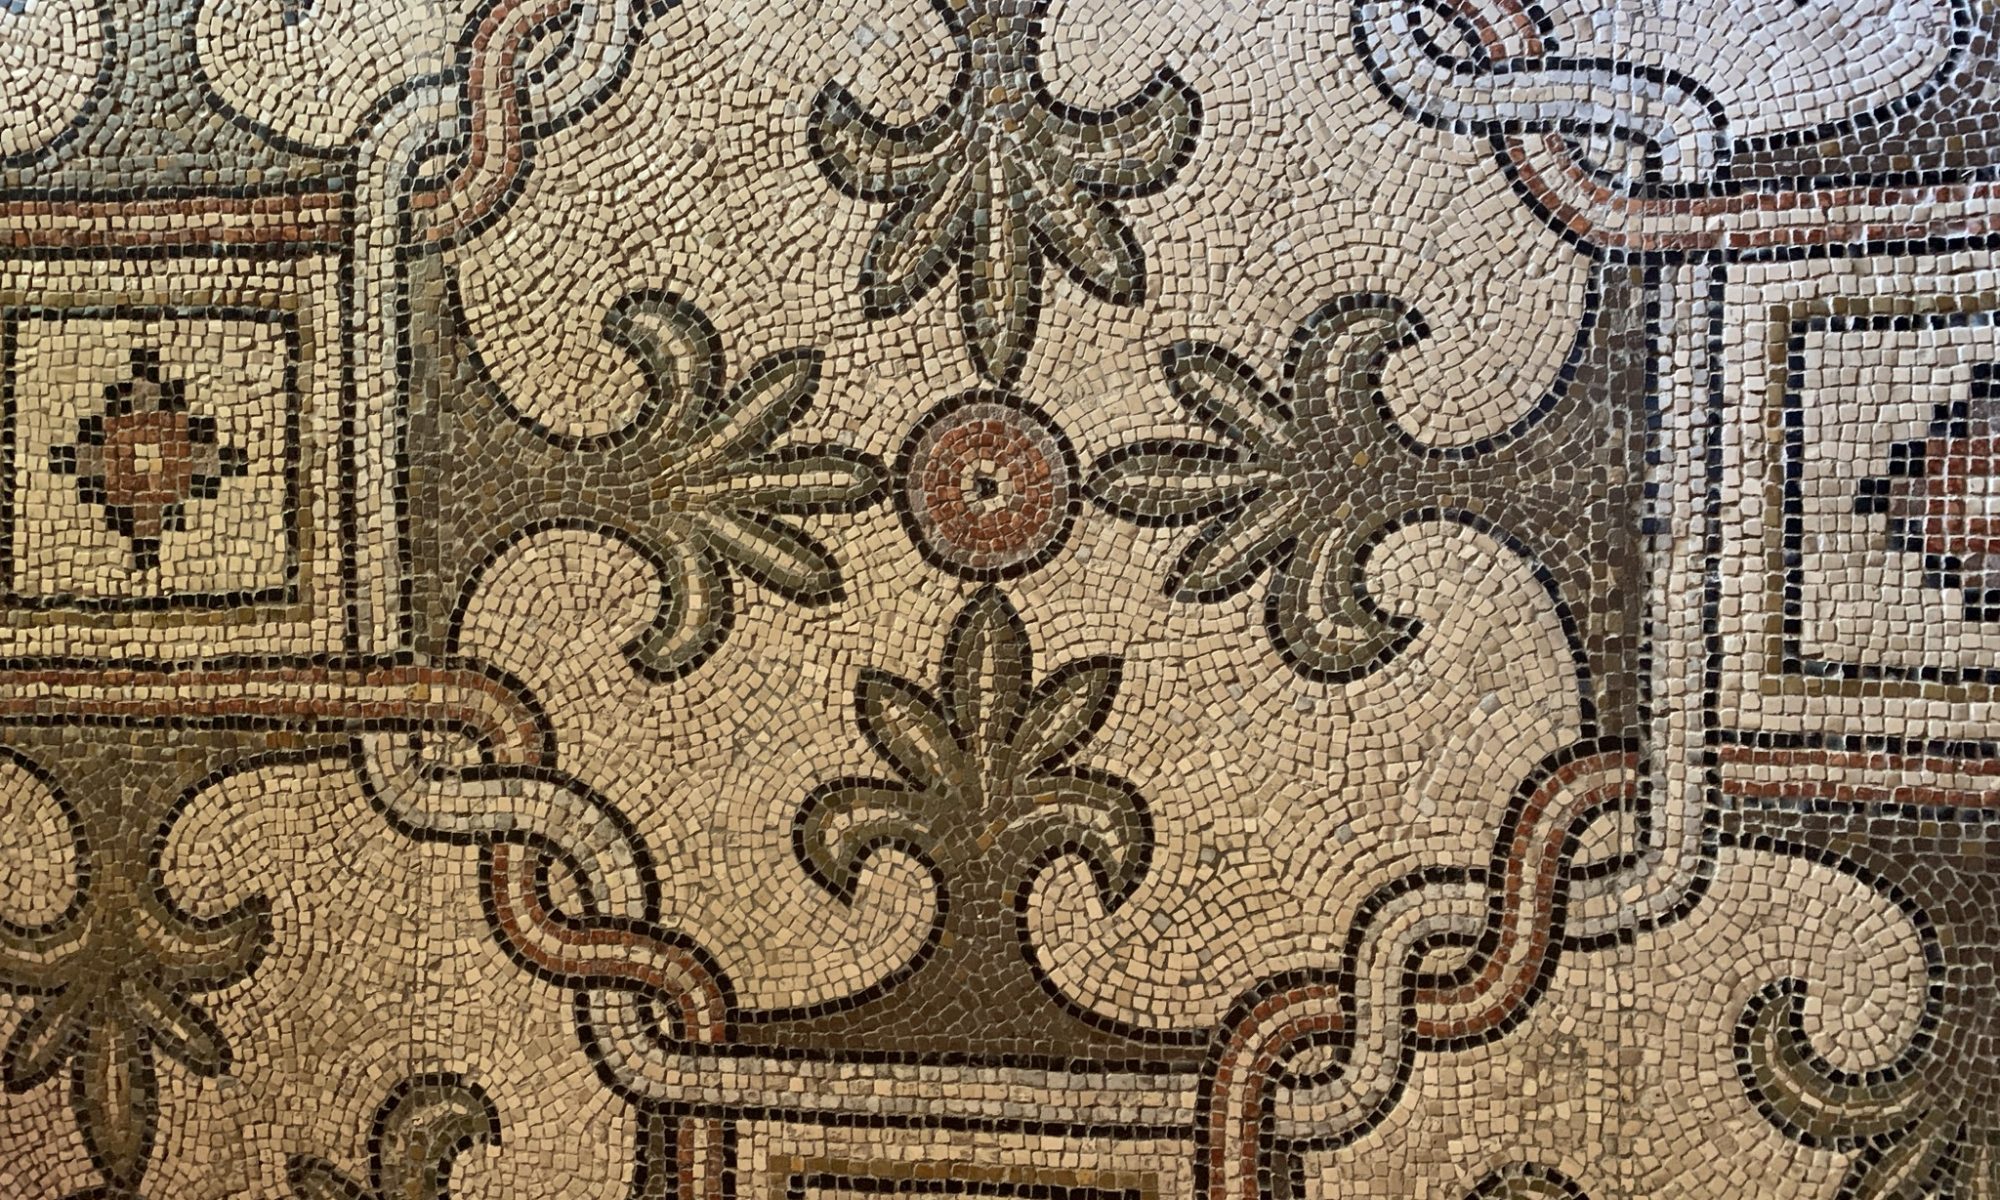 Mosaic floor tiles in Ravenna